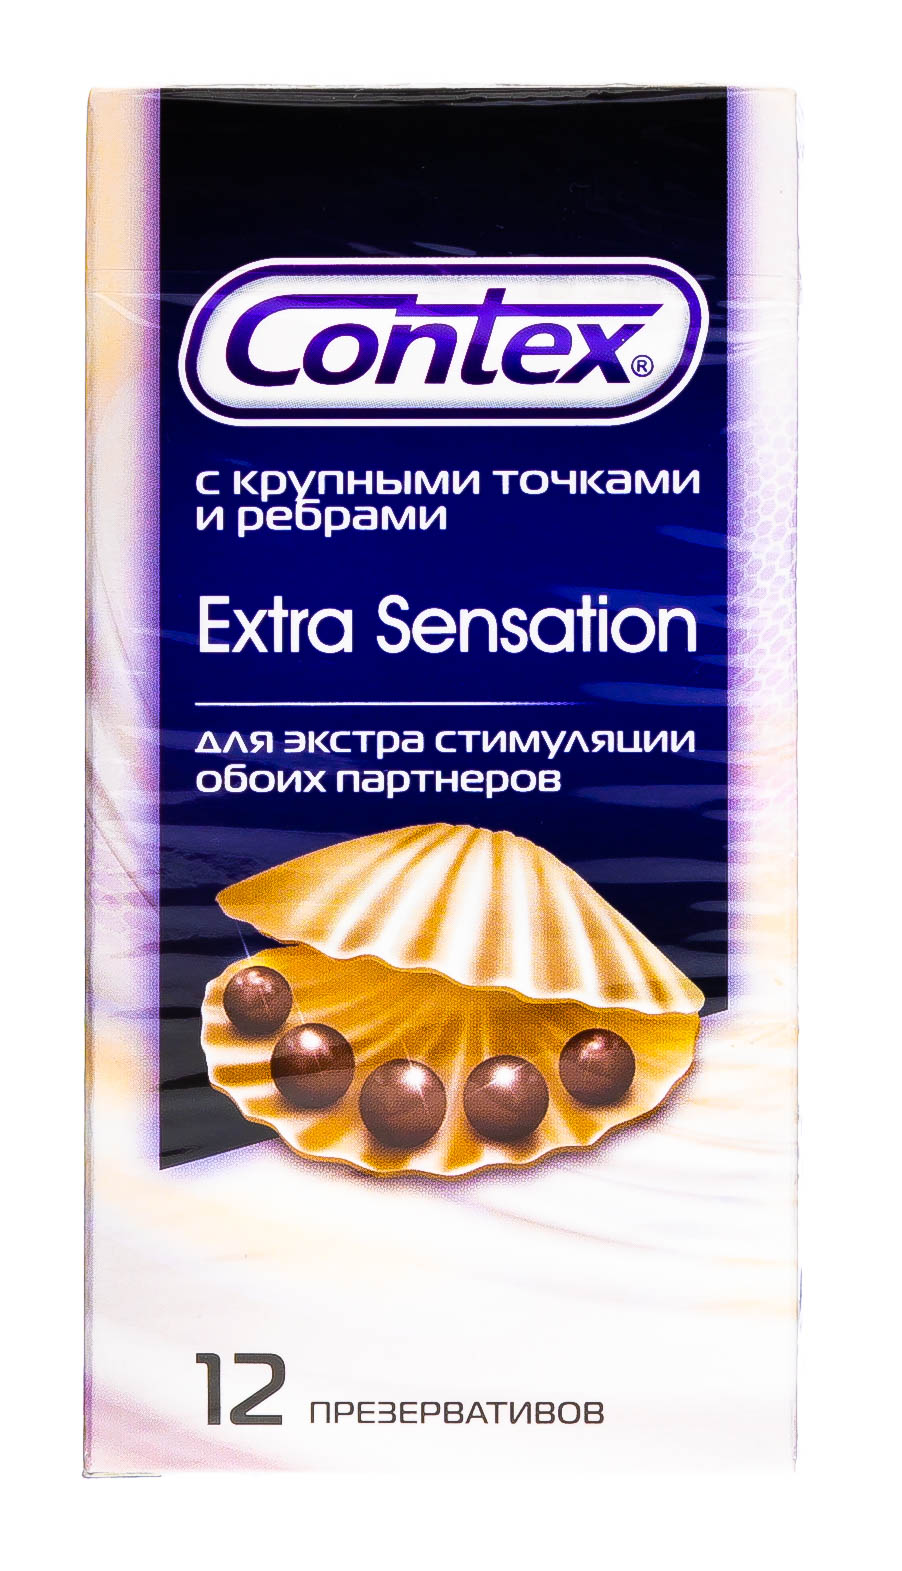 Contex Презервативы Extra Sensation с крупными точками и ребрами, 18 шт (Contex, Презервативы) презервативы contex relief 6 с ребрами и 6 с точками 12 шт